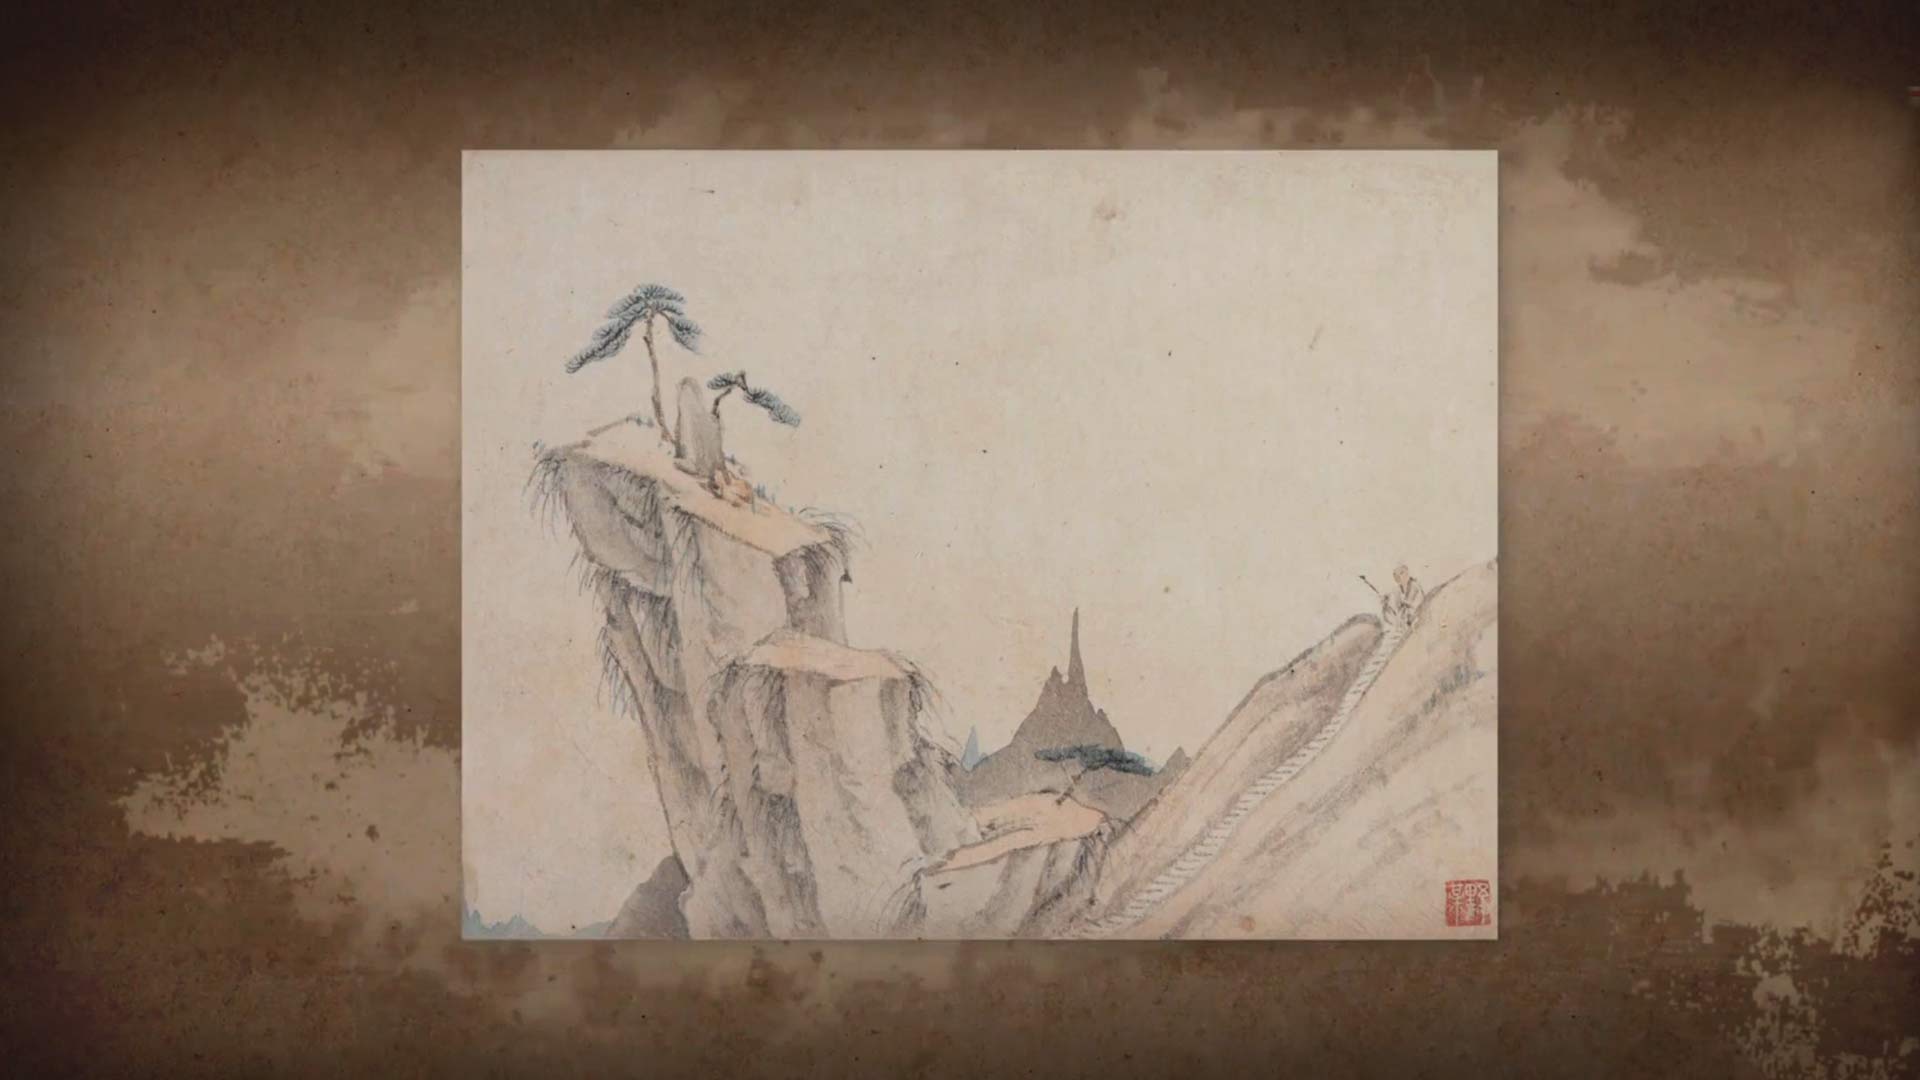 《呼吸美学－中国古画赏析》: 画里园林有洞天(2021年)